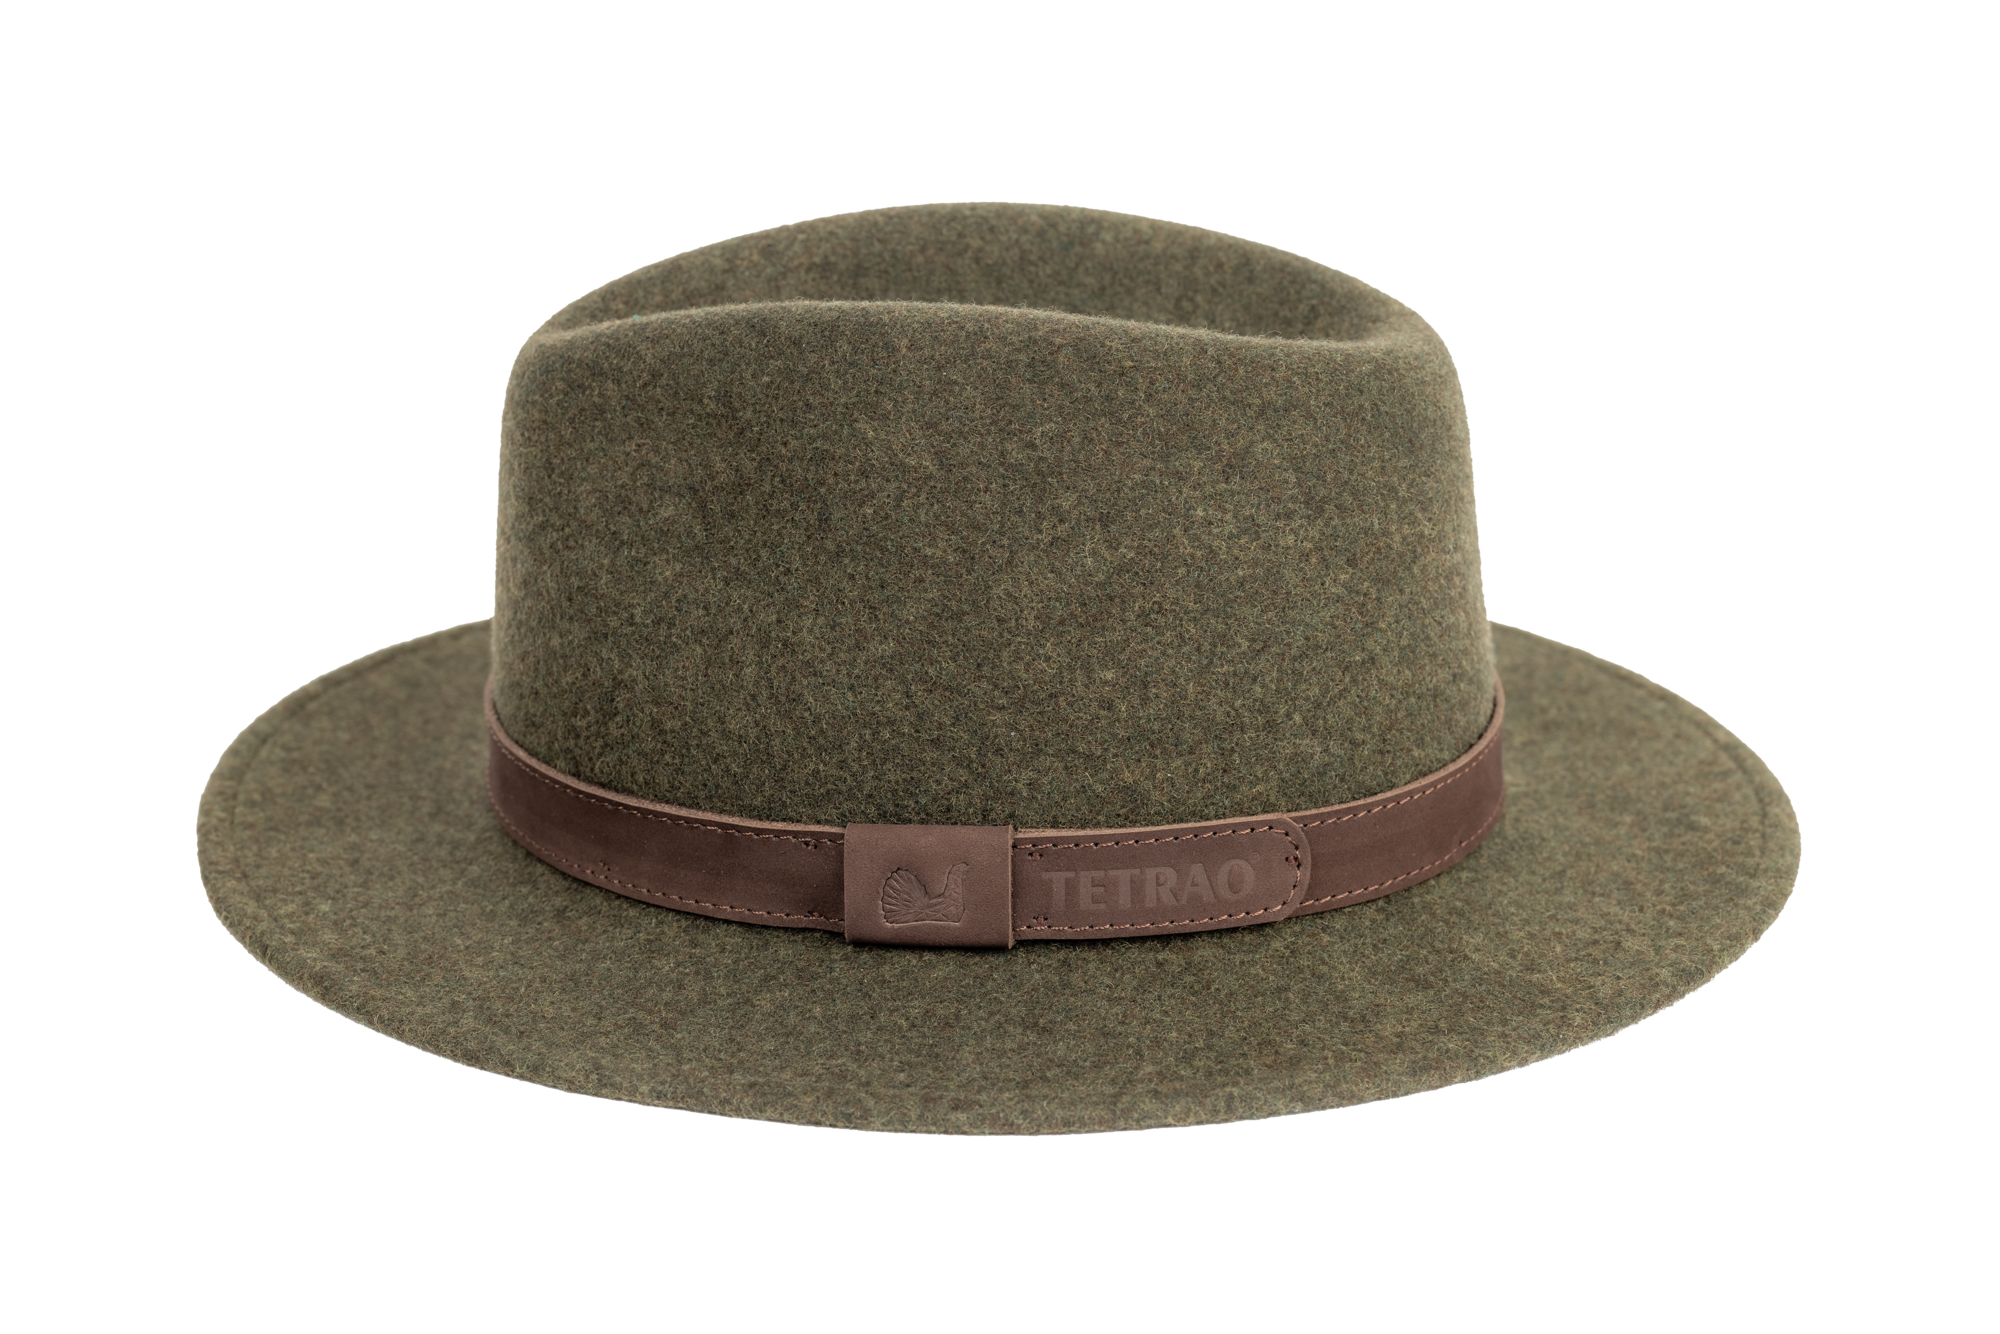 Poľovnícky klobúk TETRAO melanž UNI - zelený  58